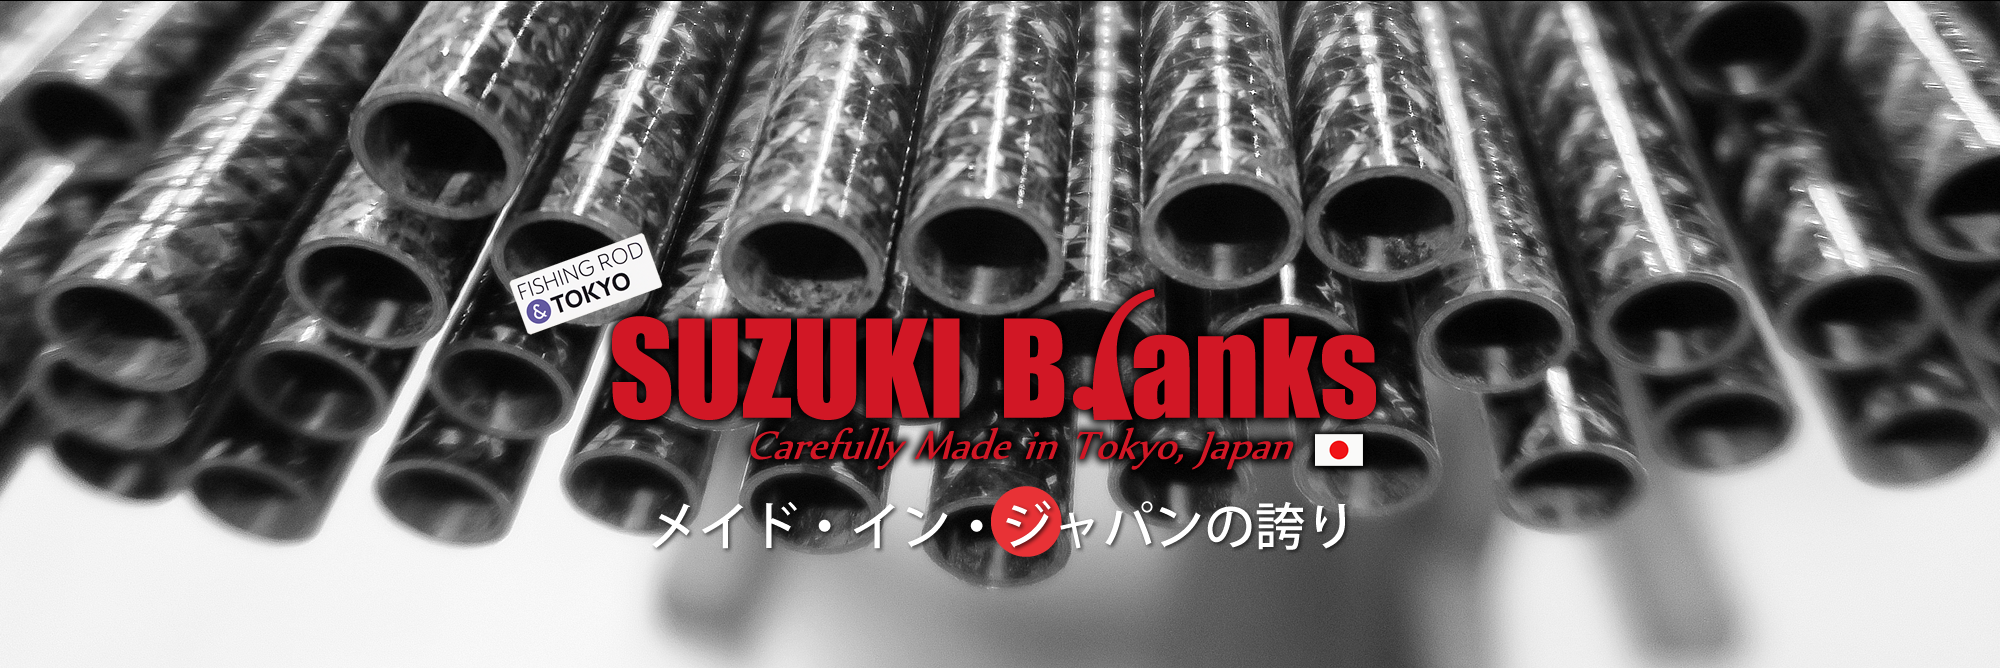 メイド・イン・ジャパンの誇り SUZUKI Blanks